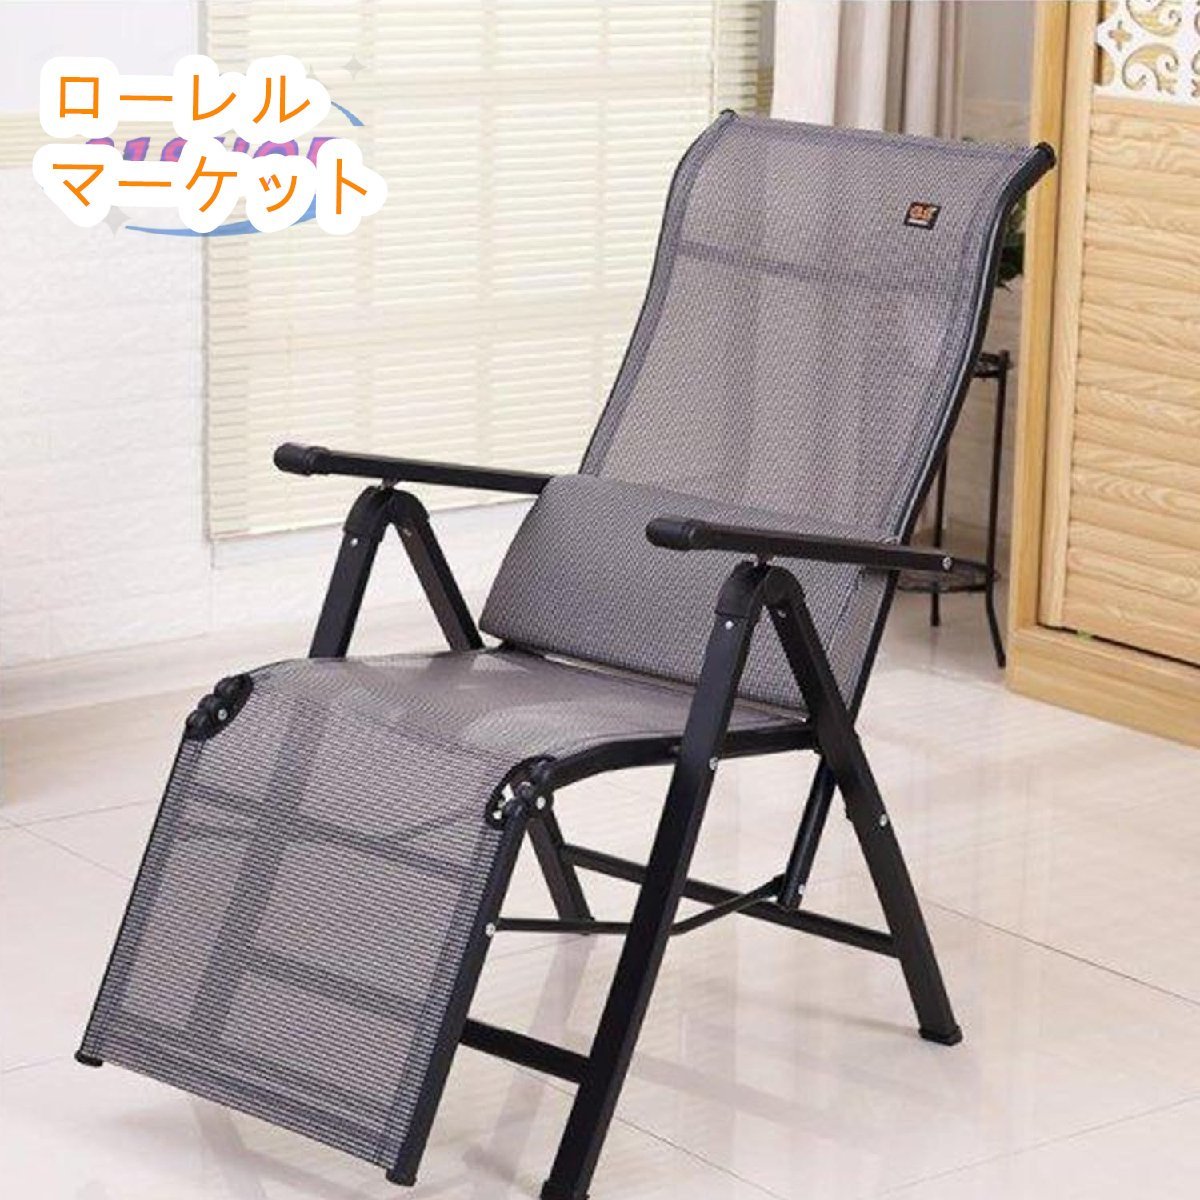 沙滩椅椅子家用椅子折叠办公室午休椅午睡躺椅躺椅, 手工作品, 家具, 椅子, 椅子, 椅子